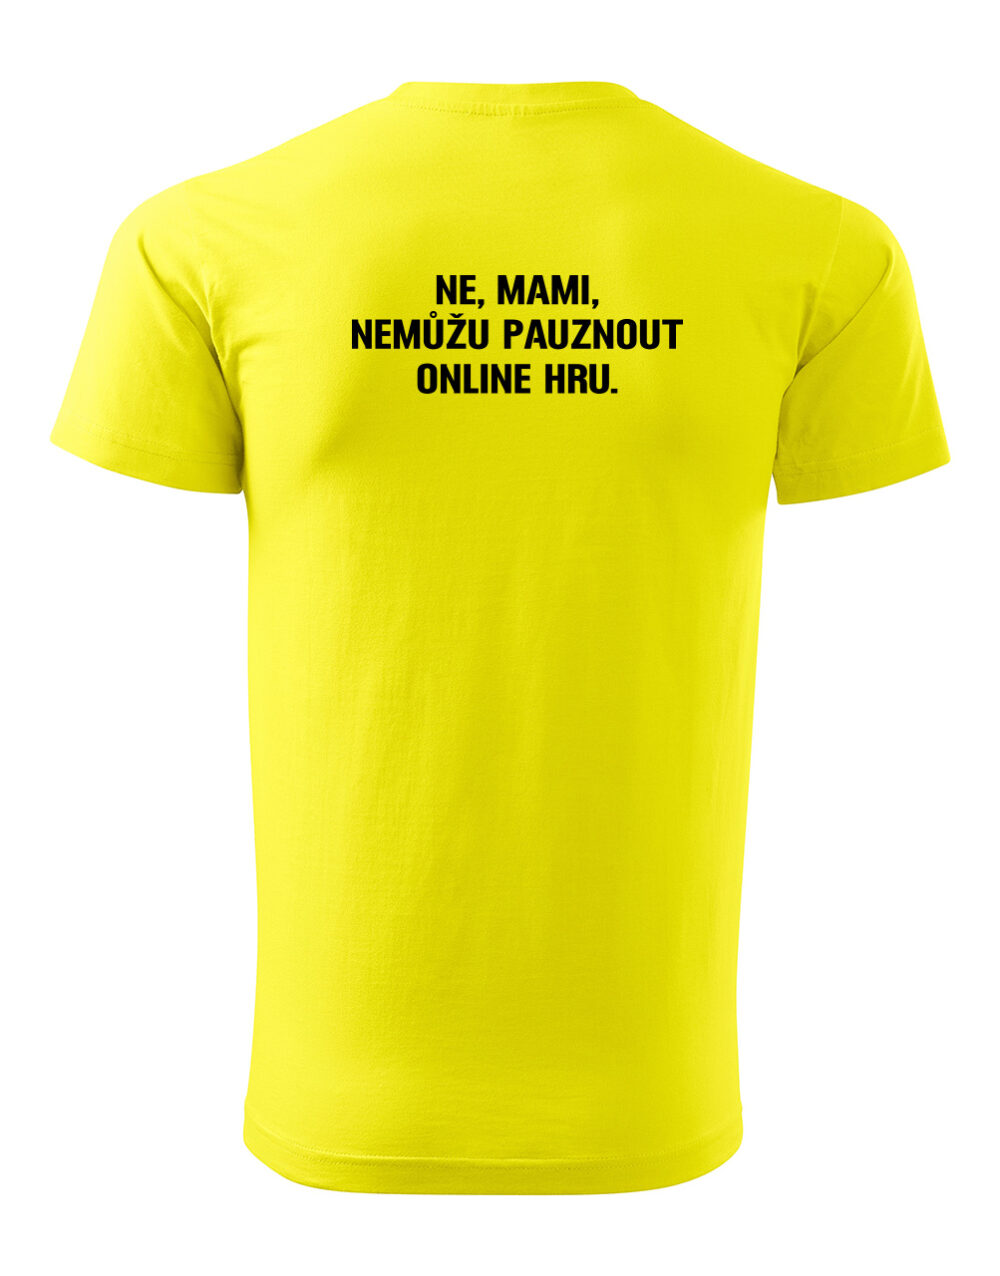 Pánské tričko s potiskem Nemůžu pauznout online hru žlutá